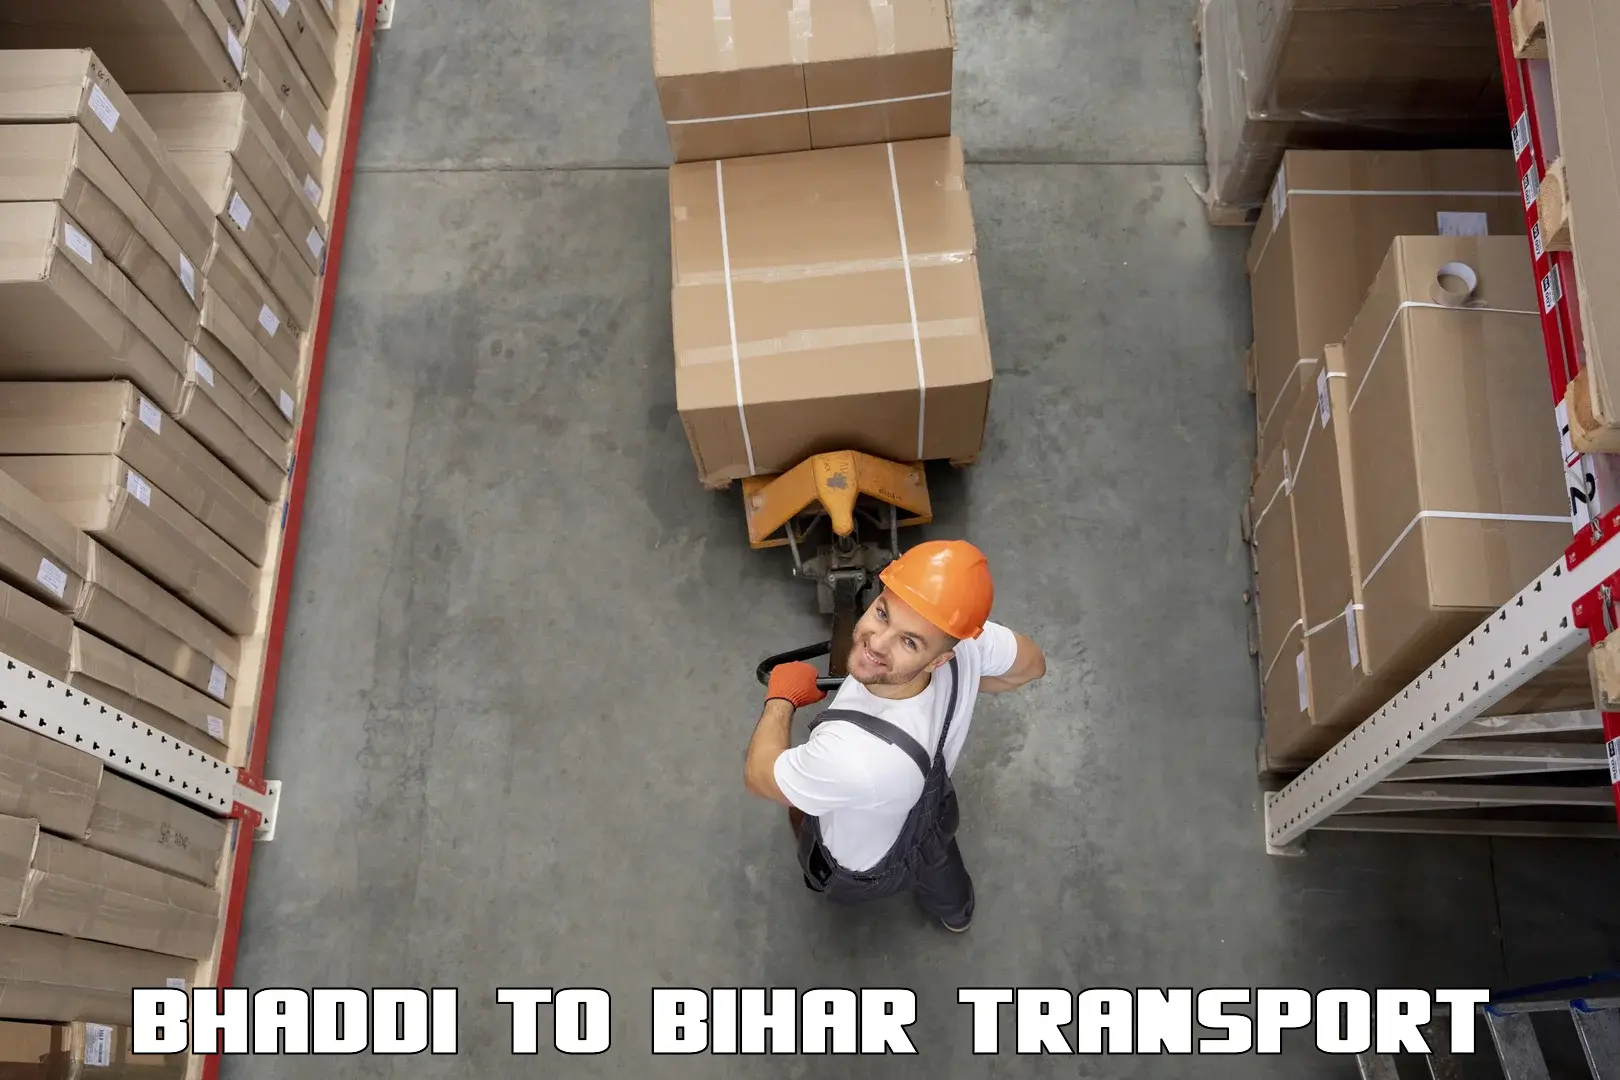 Scooty transport charges Bhaddi to Mashrakh